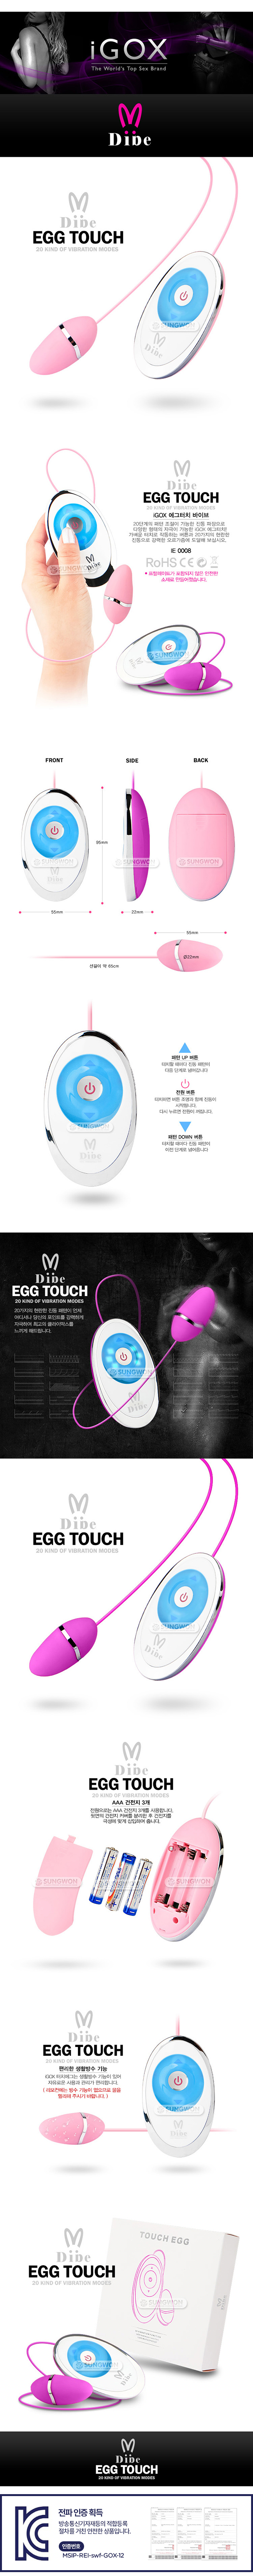 [20단 진동] iGOX 에그 터치 바이브(iGOX Egg Touch) - GOX-91